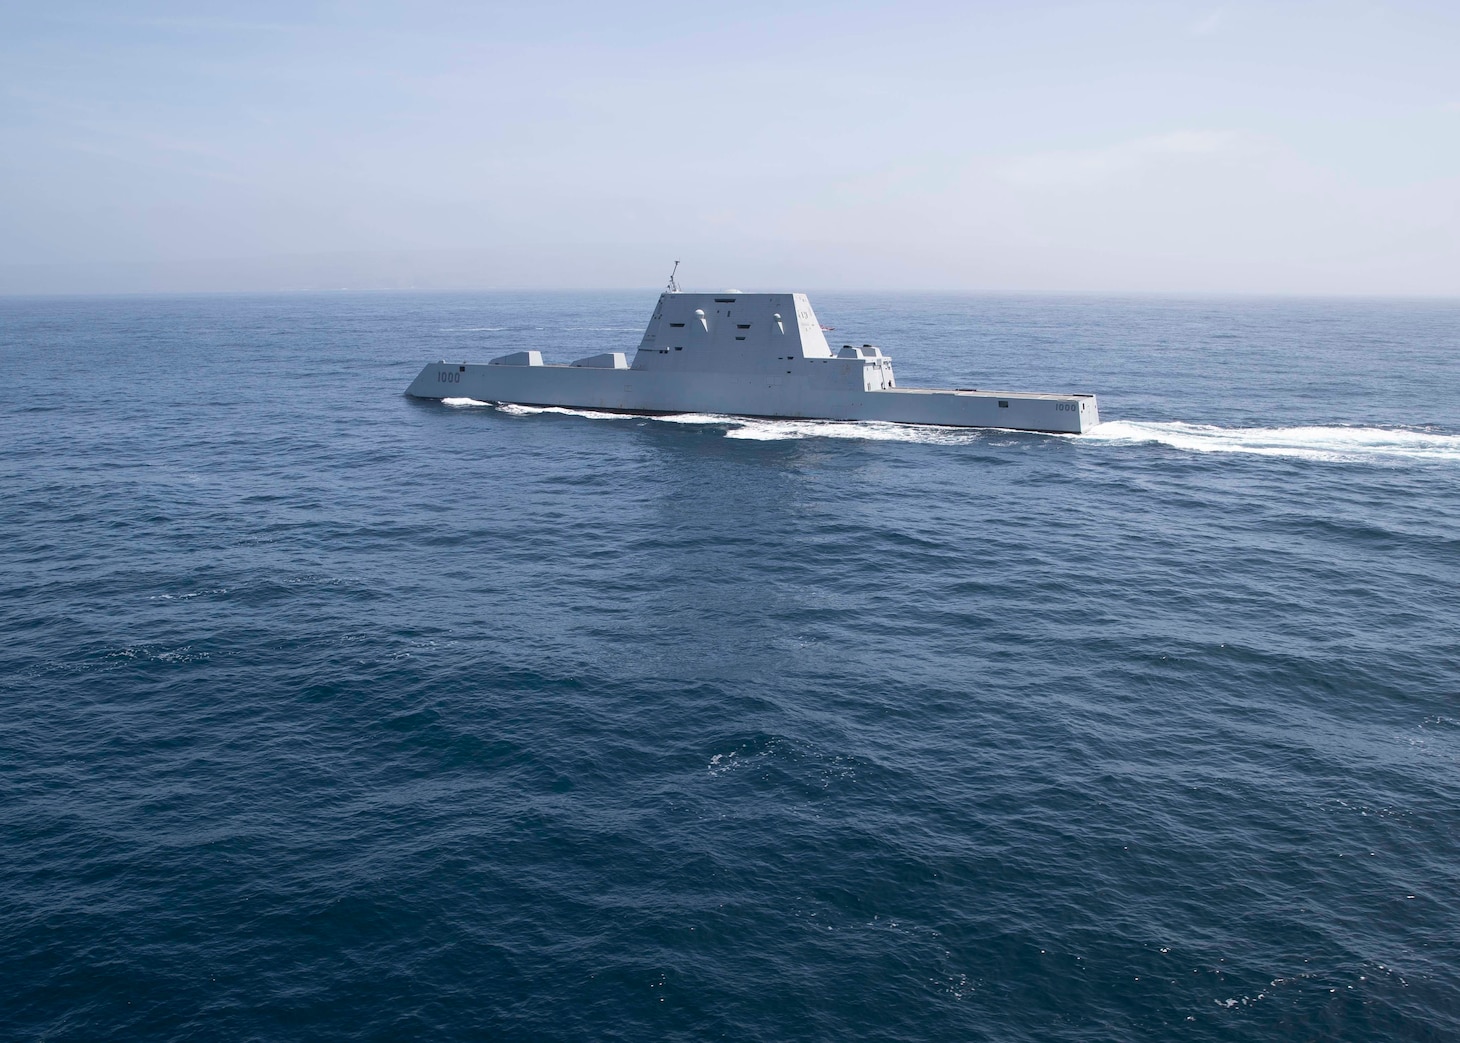 The Zumwalt-class guided-missile destroyer USS Zumwalt (DDG 1000) sails through the Pacific Ocean, April 10, 2022.